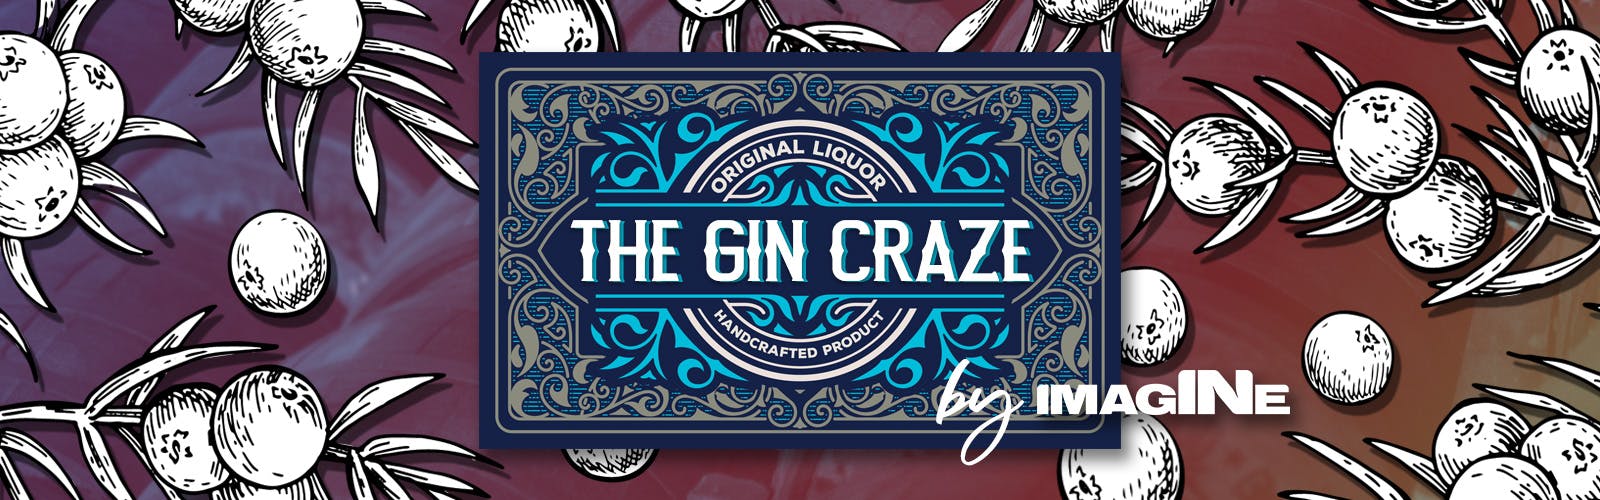 La experiencia Gin Craze en Londres con Gin Palace y visita a la destilería